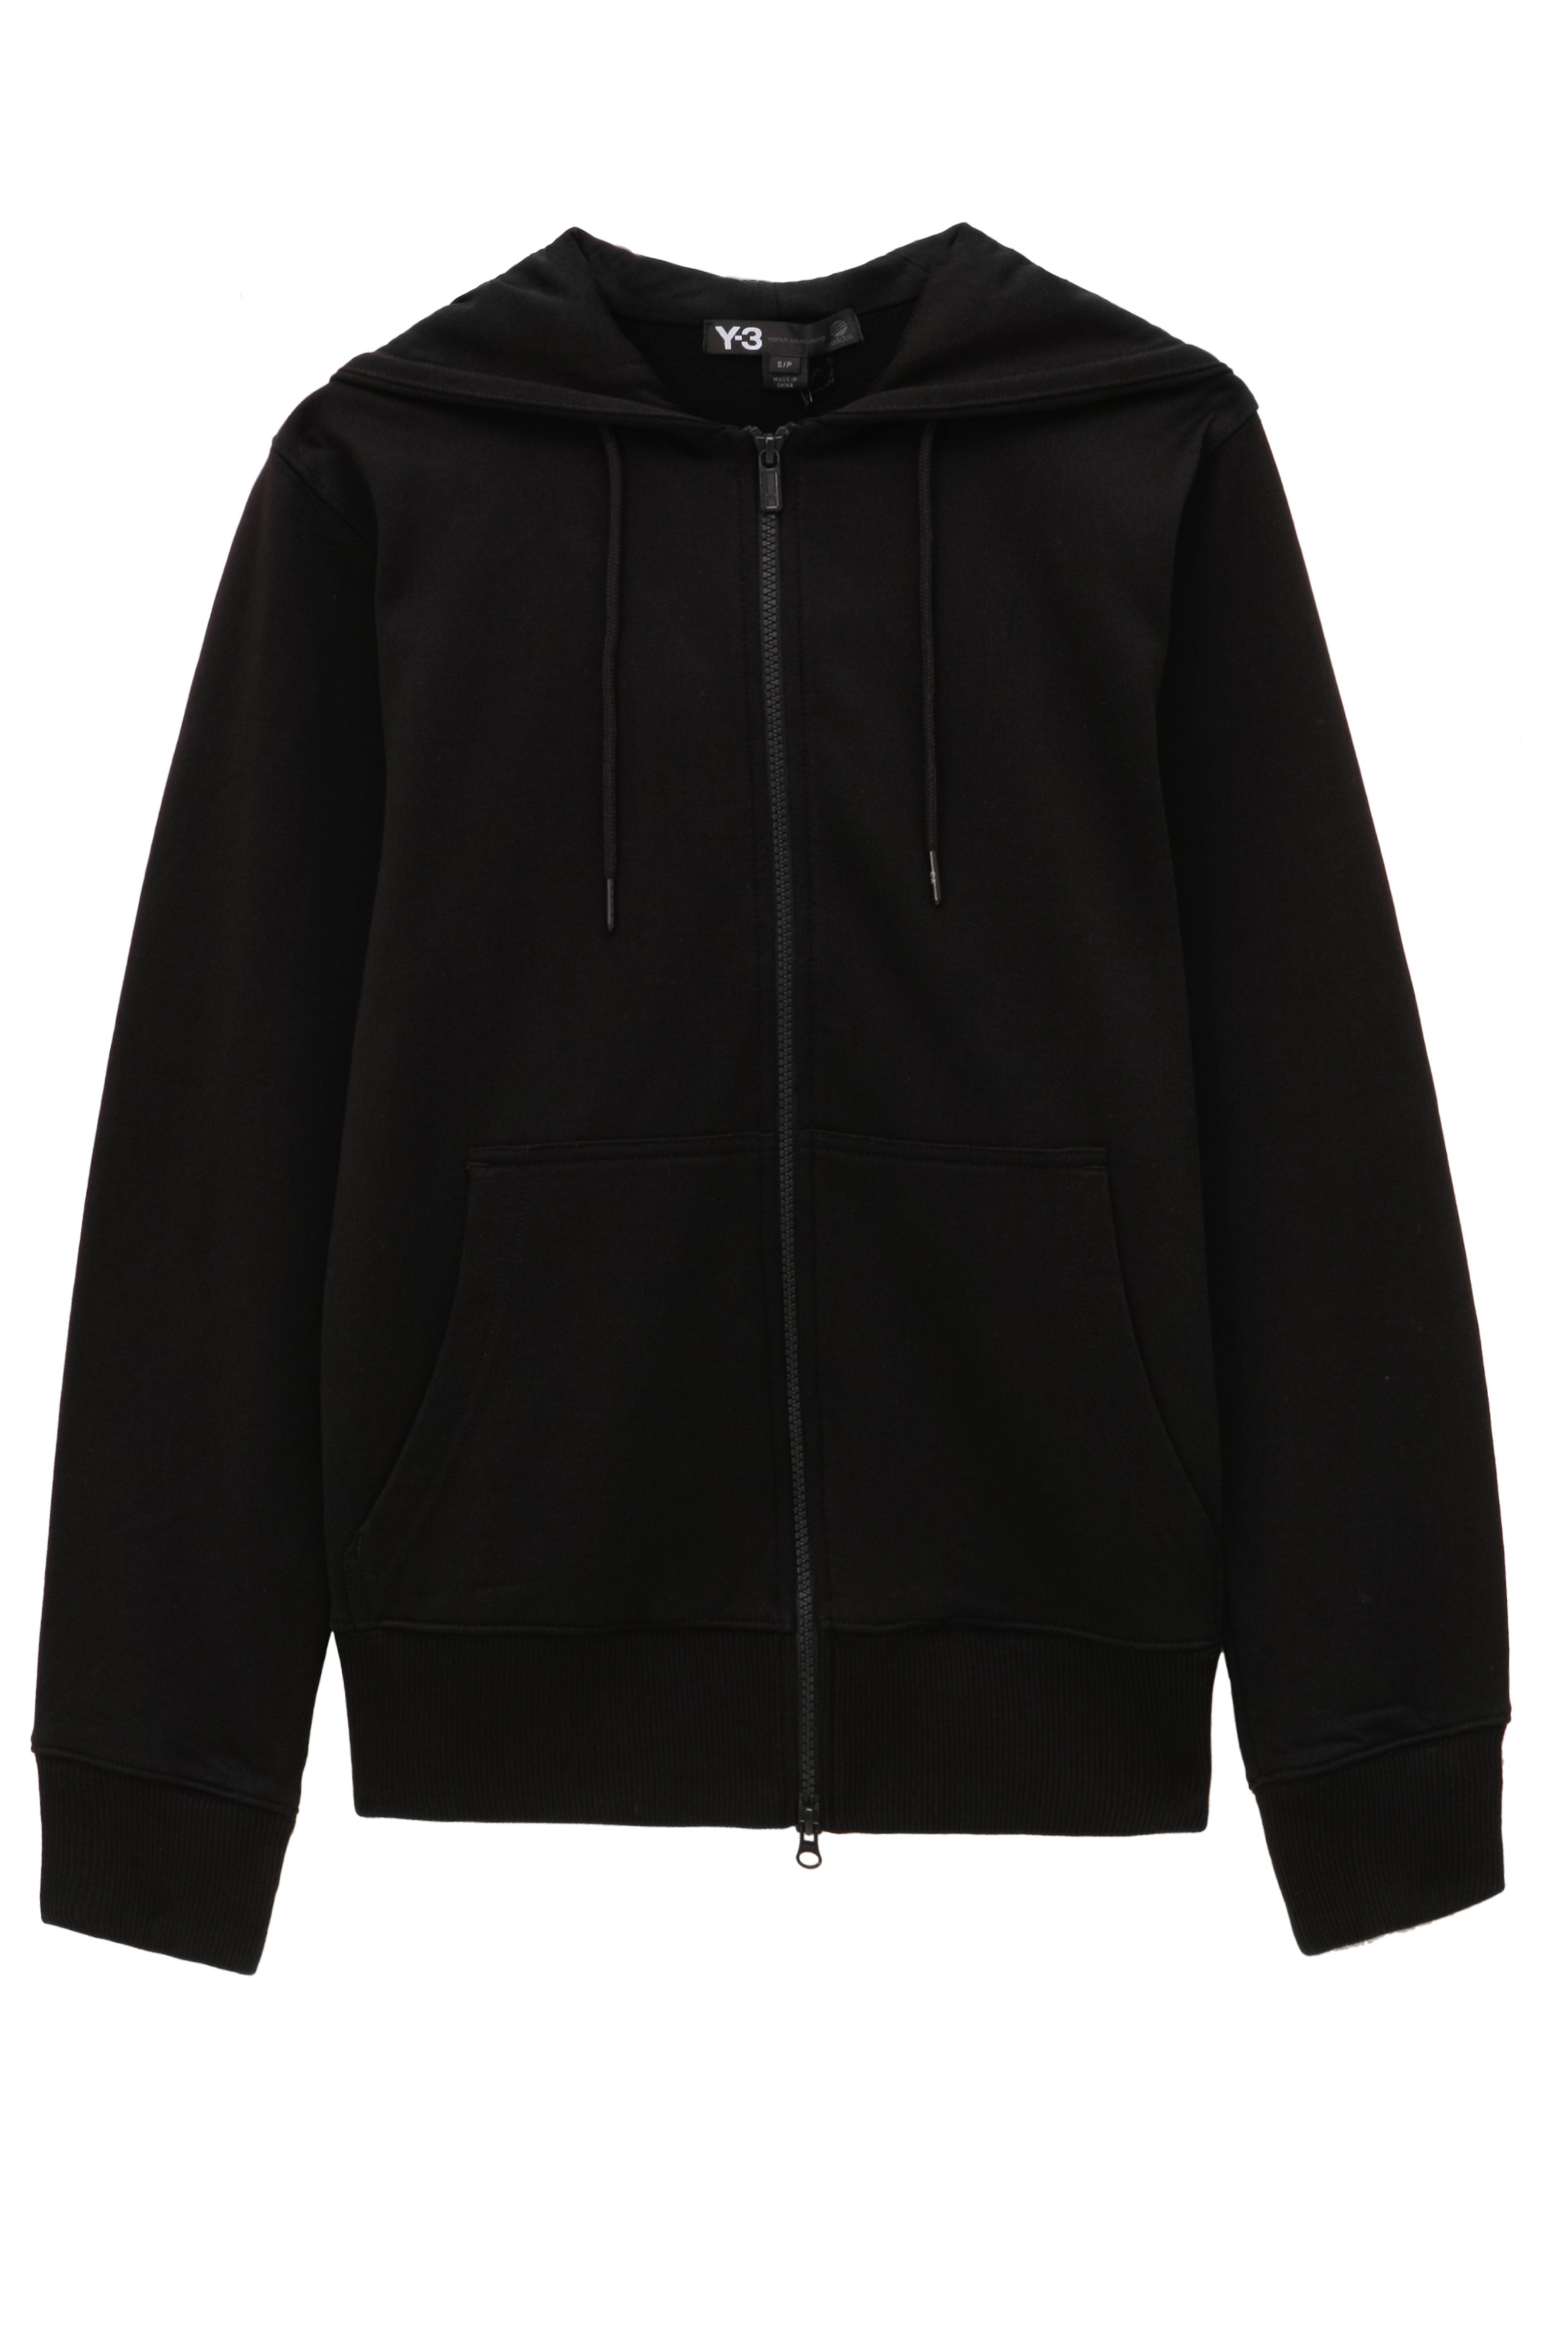 y3 hoodie black